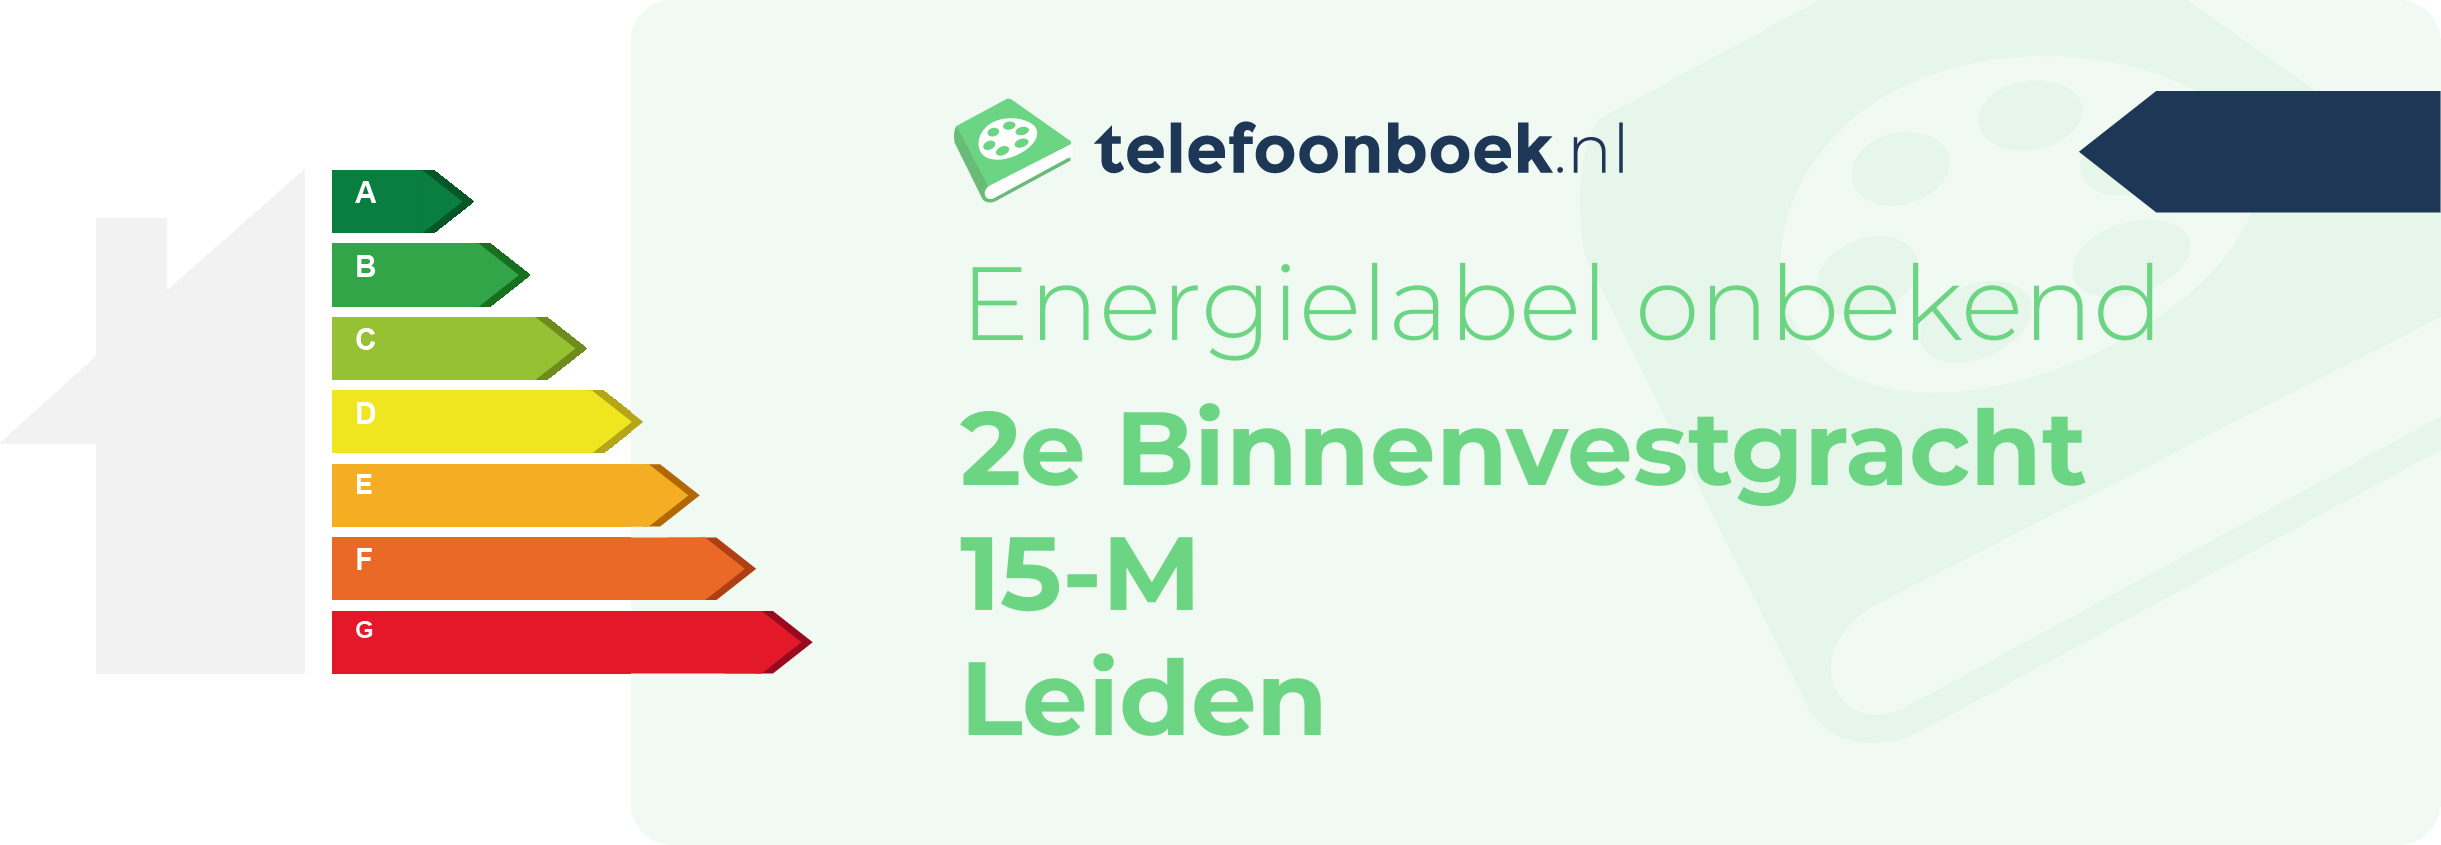 Energielabel 2e Binnenvestgracht 15-M Leiden